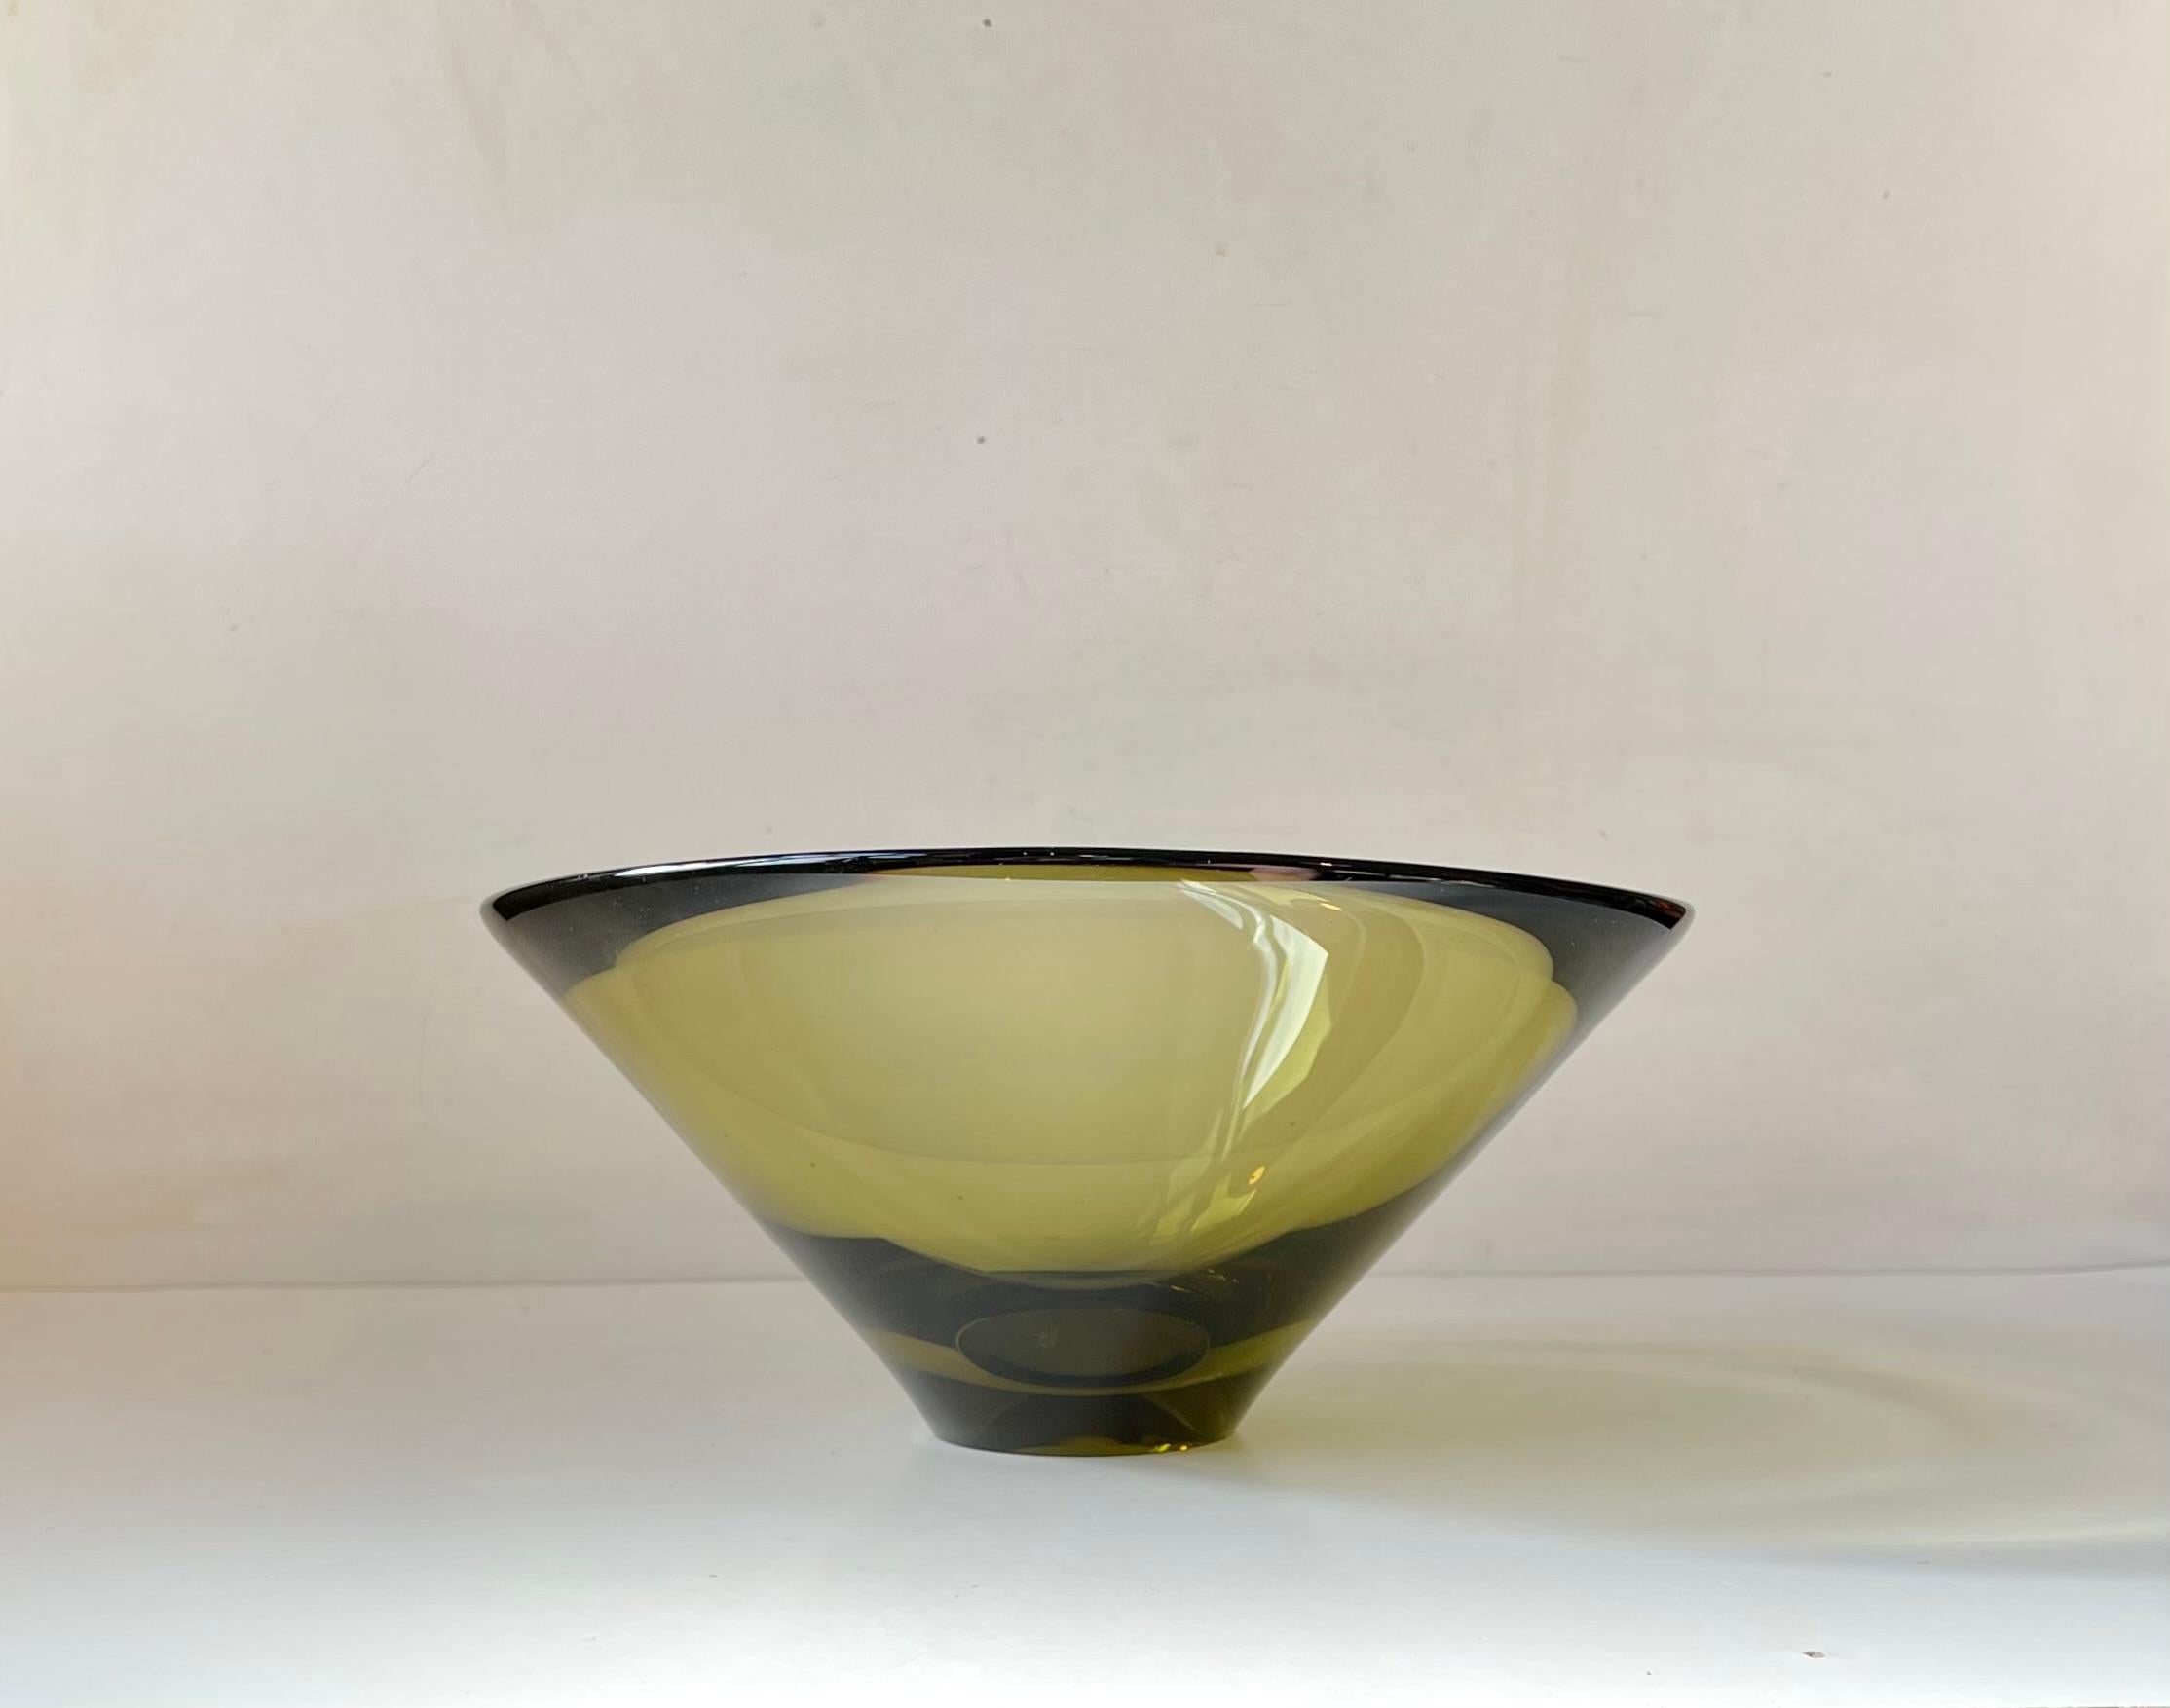 Diese äußerst seltene mundgeblasene olivgrüne Glasschale von Per Lütken trägt den Titel 